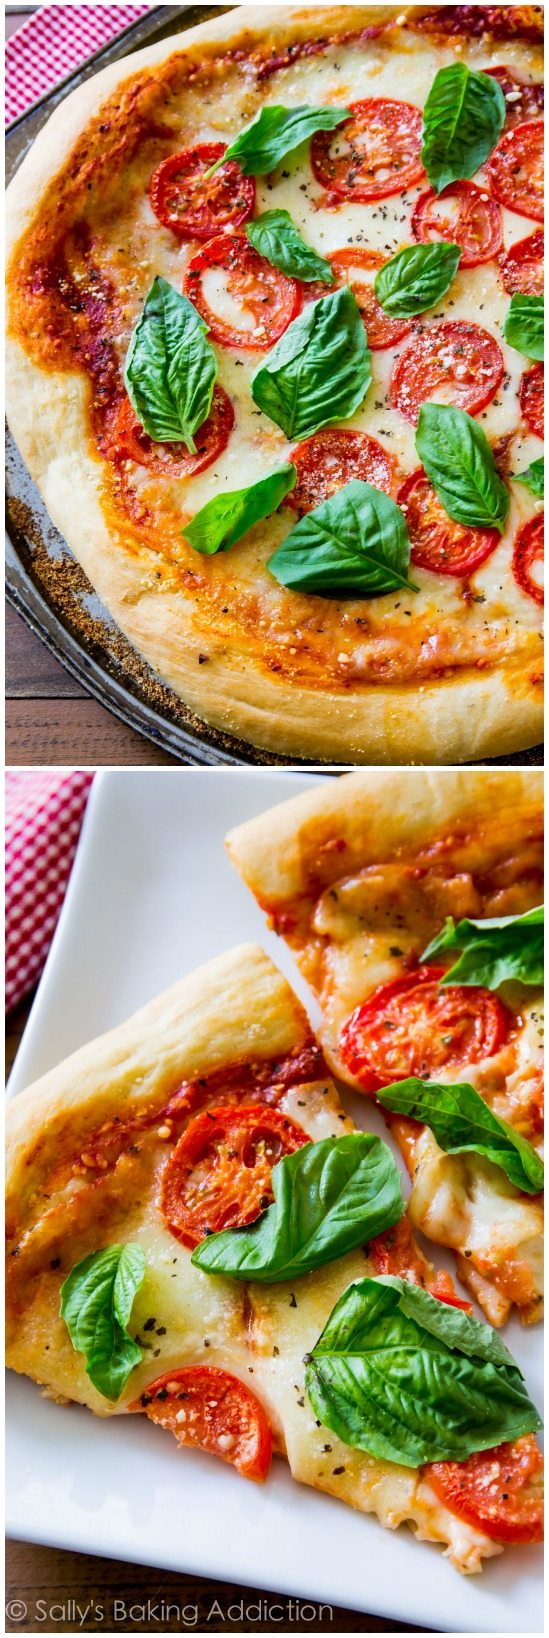 Parfois, vous ne pouvez tout simplement pas battre un classique comme la pizza Margherita fraîche et simple. Cette croûte de pizza faite maison avec des garnitures fraîches frappe la place!